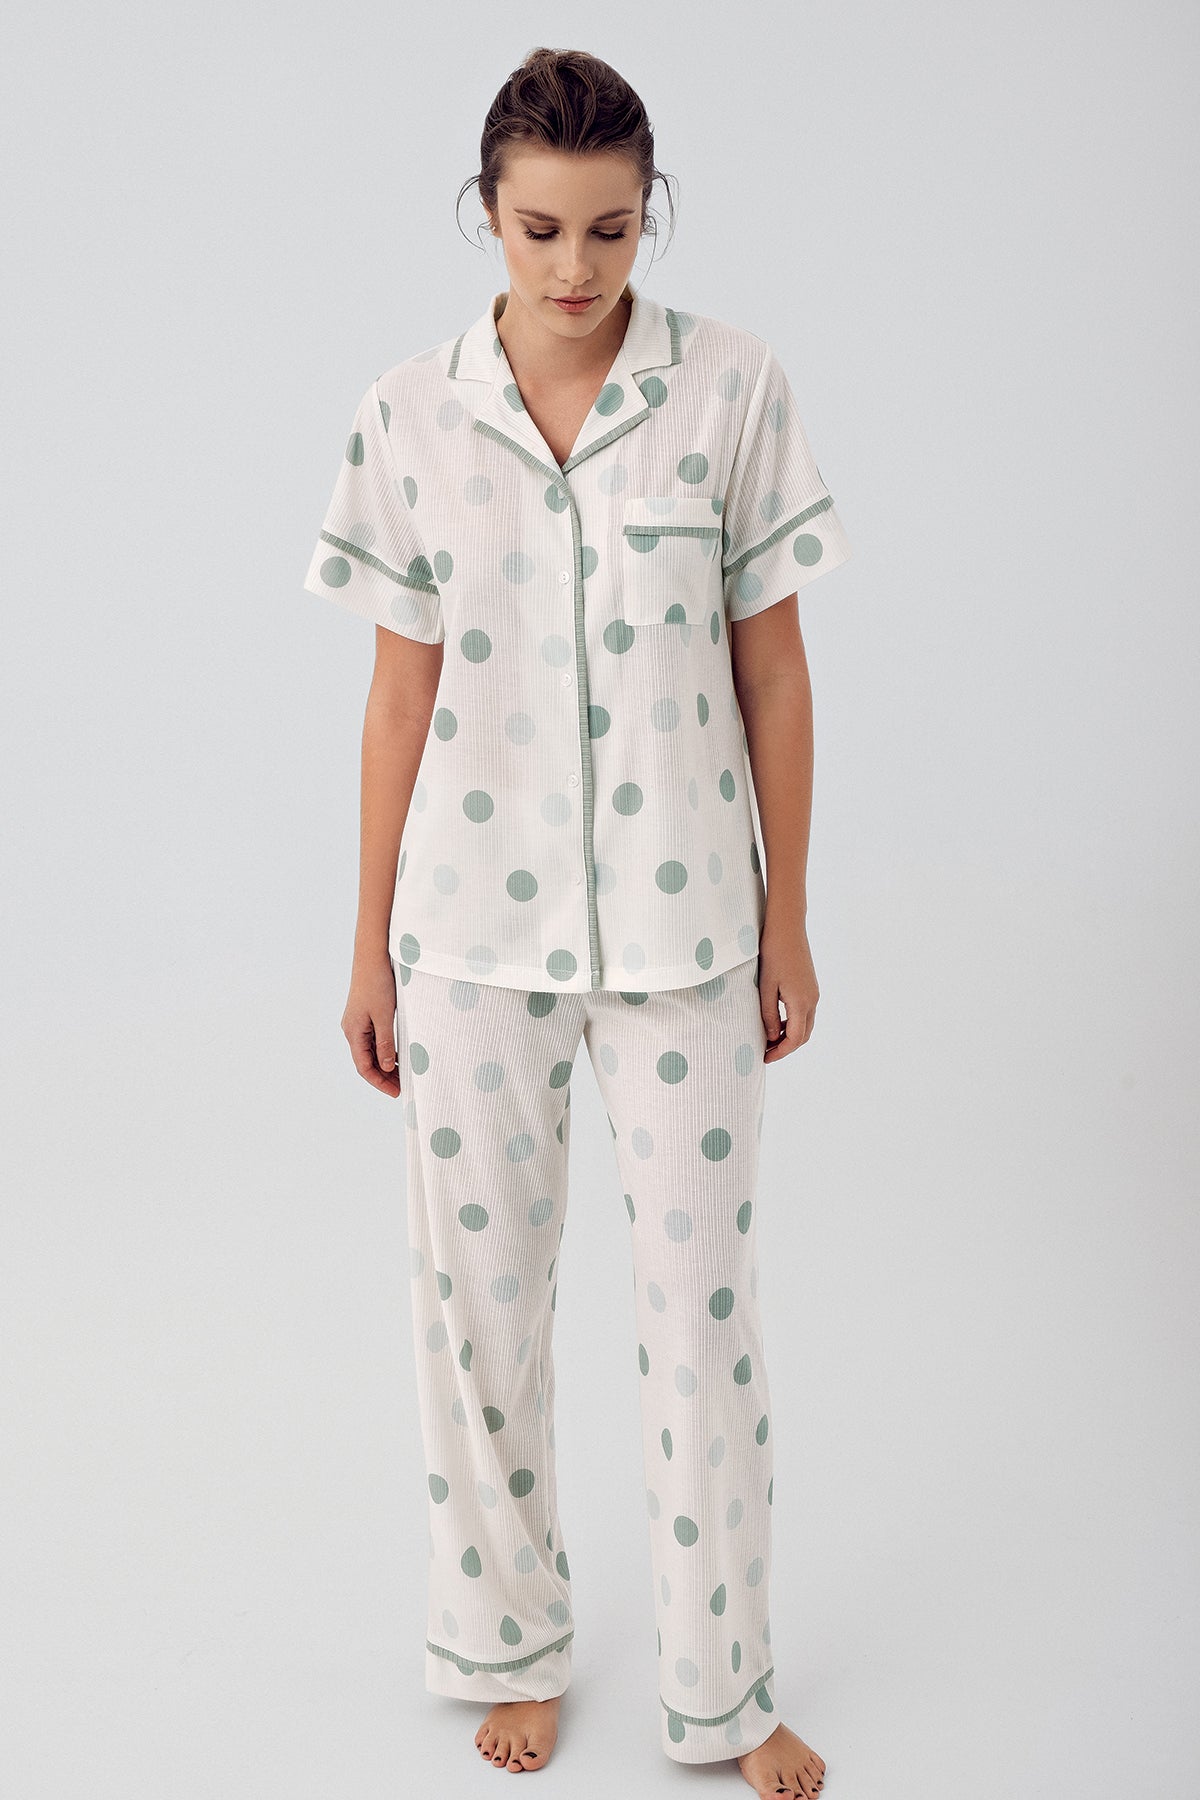 Shopymommy 16200 Polka Dot Maternity & Nursing Pajamas Green